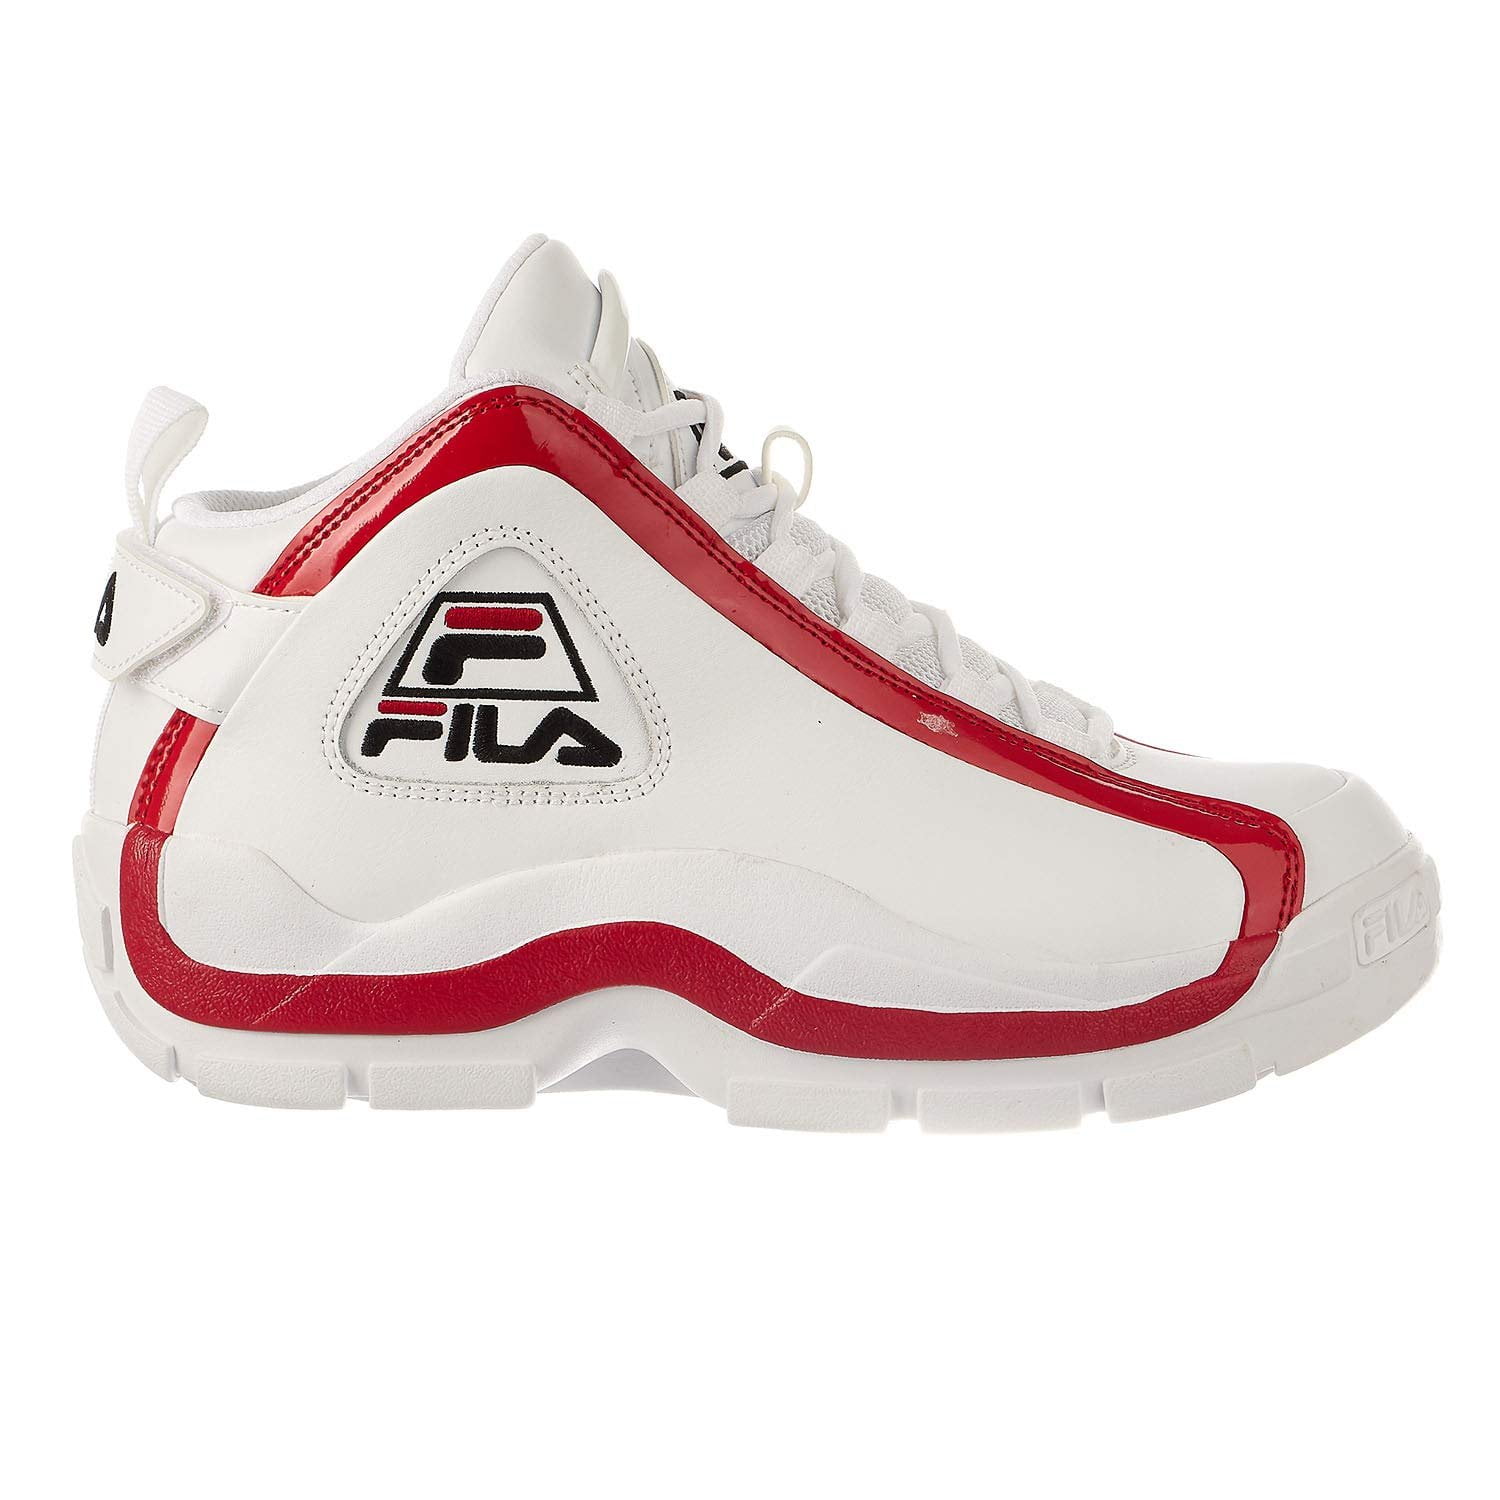 Fila Men's Grant Hill Sneakers 10.5, White/Fila Red/Black - Walmart.com